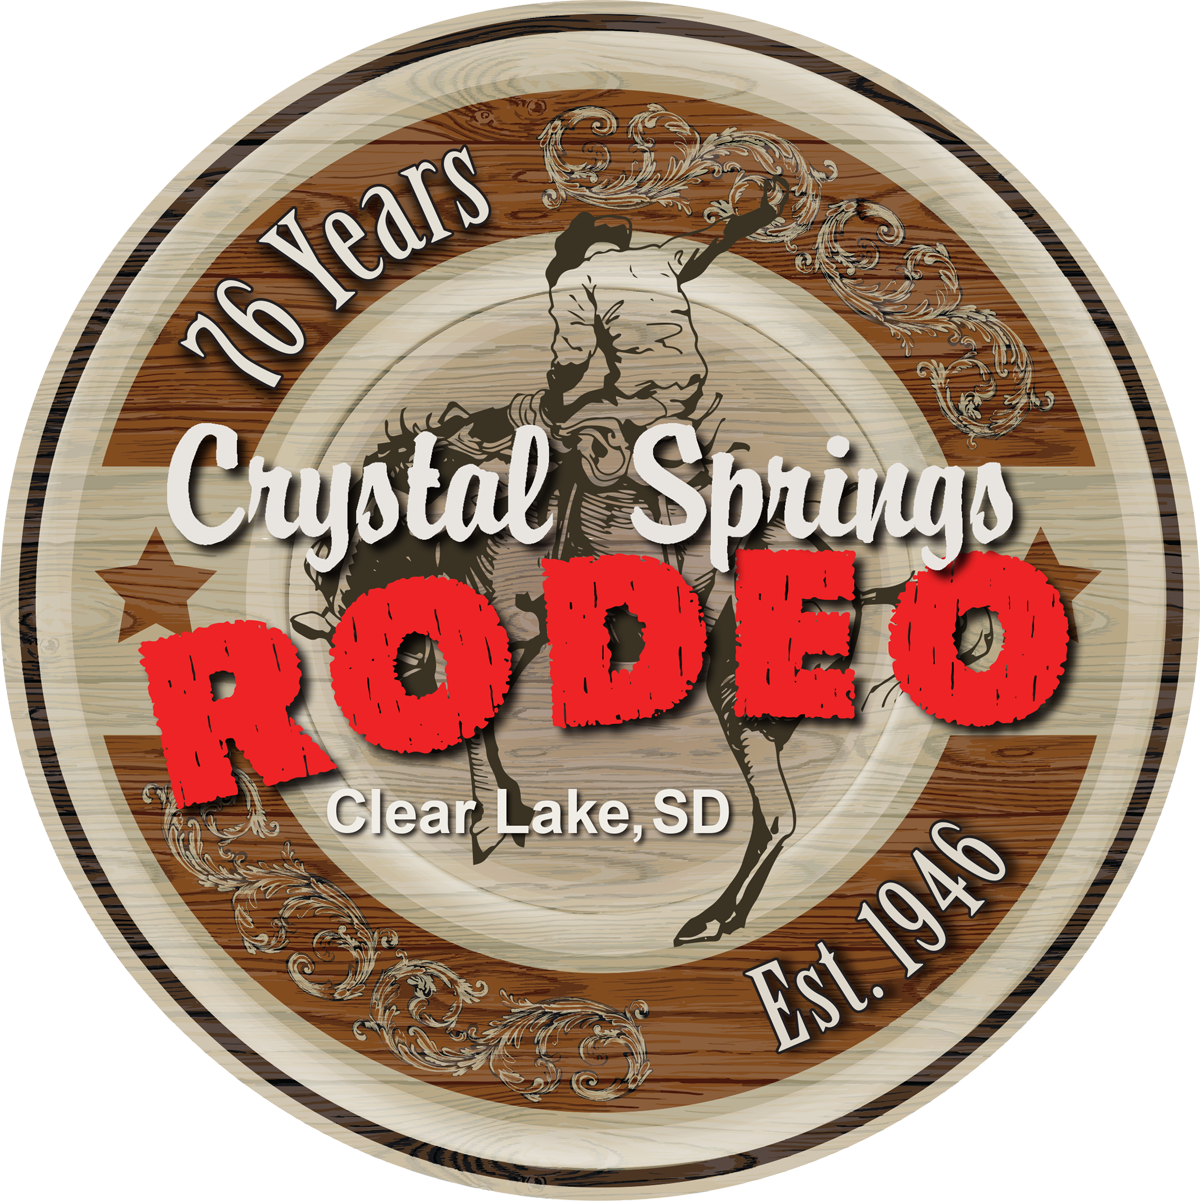 Crystal Springs Rodeo